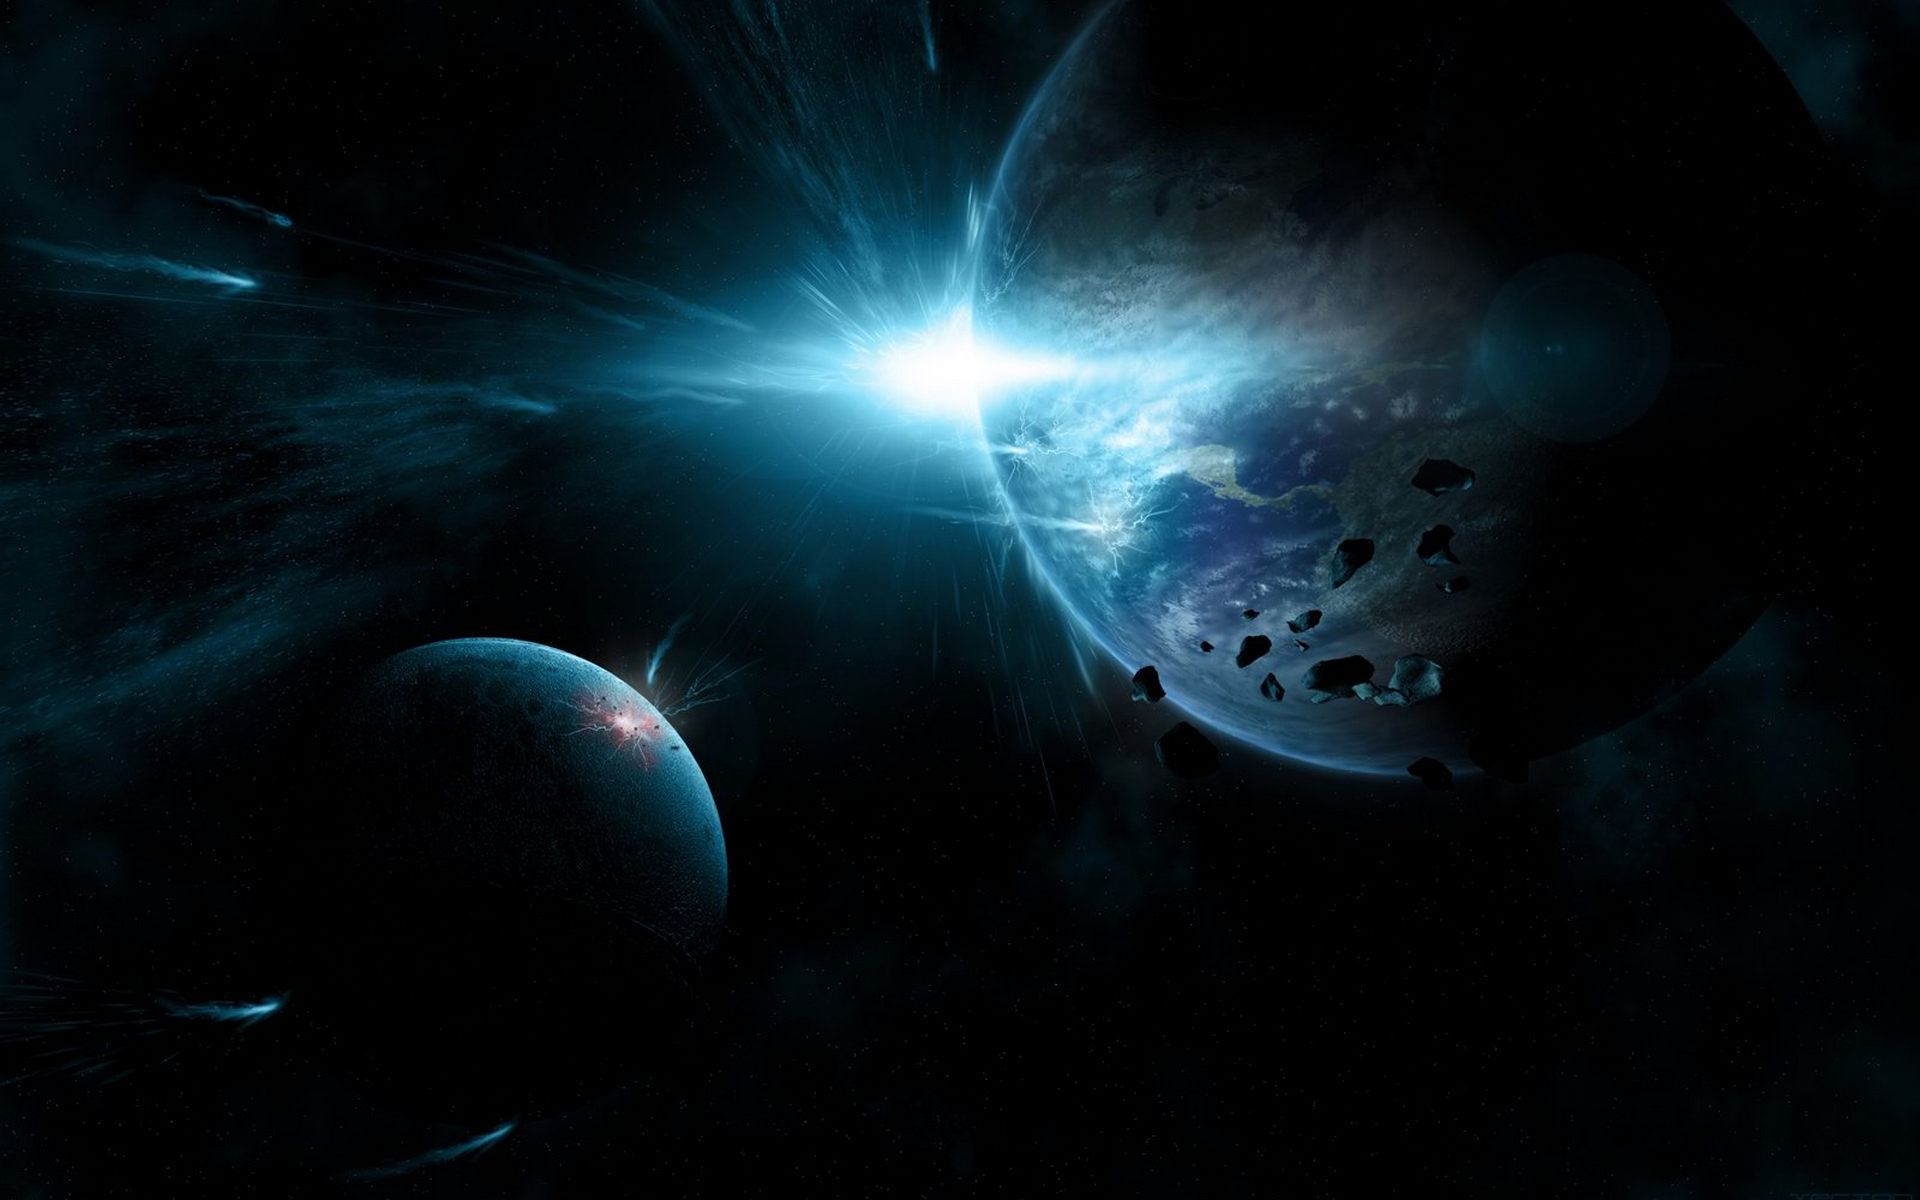 Обои космос планета метеор картинки на рабочий стол на тему Космос - скачать бесплатно